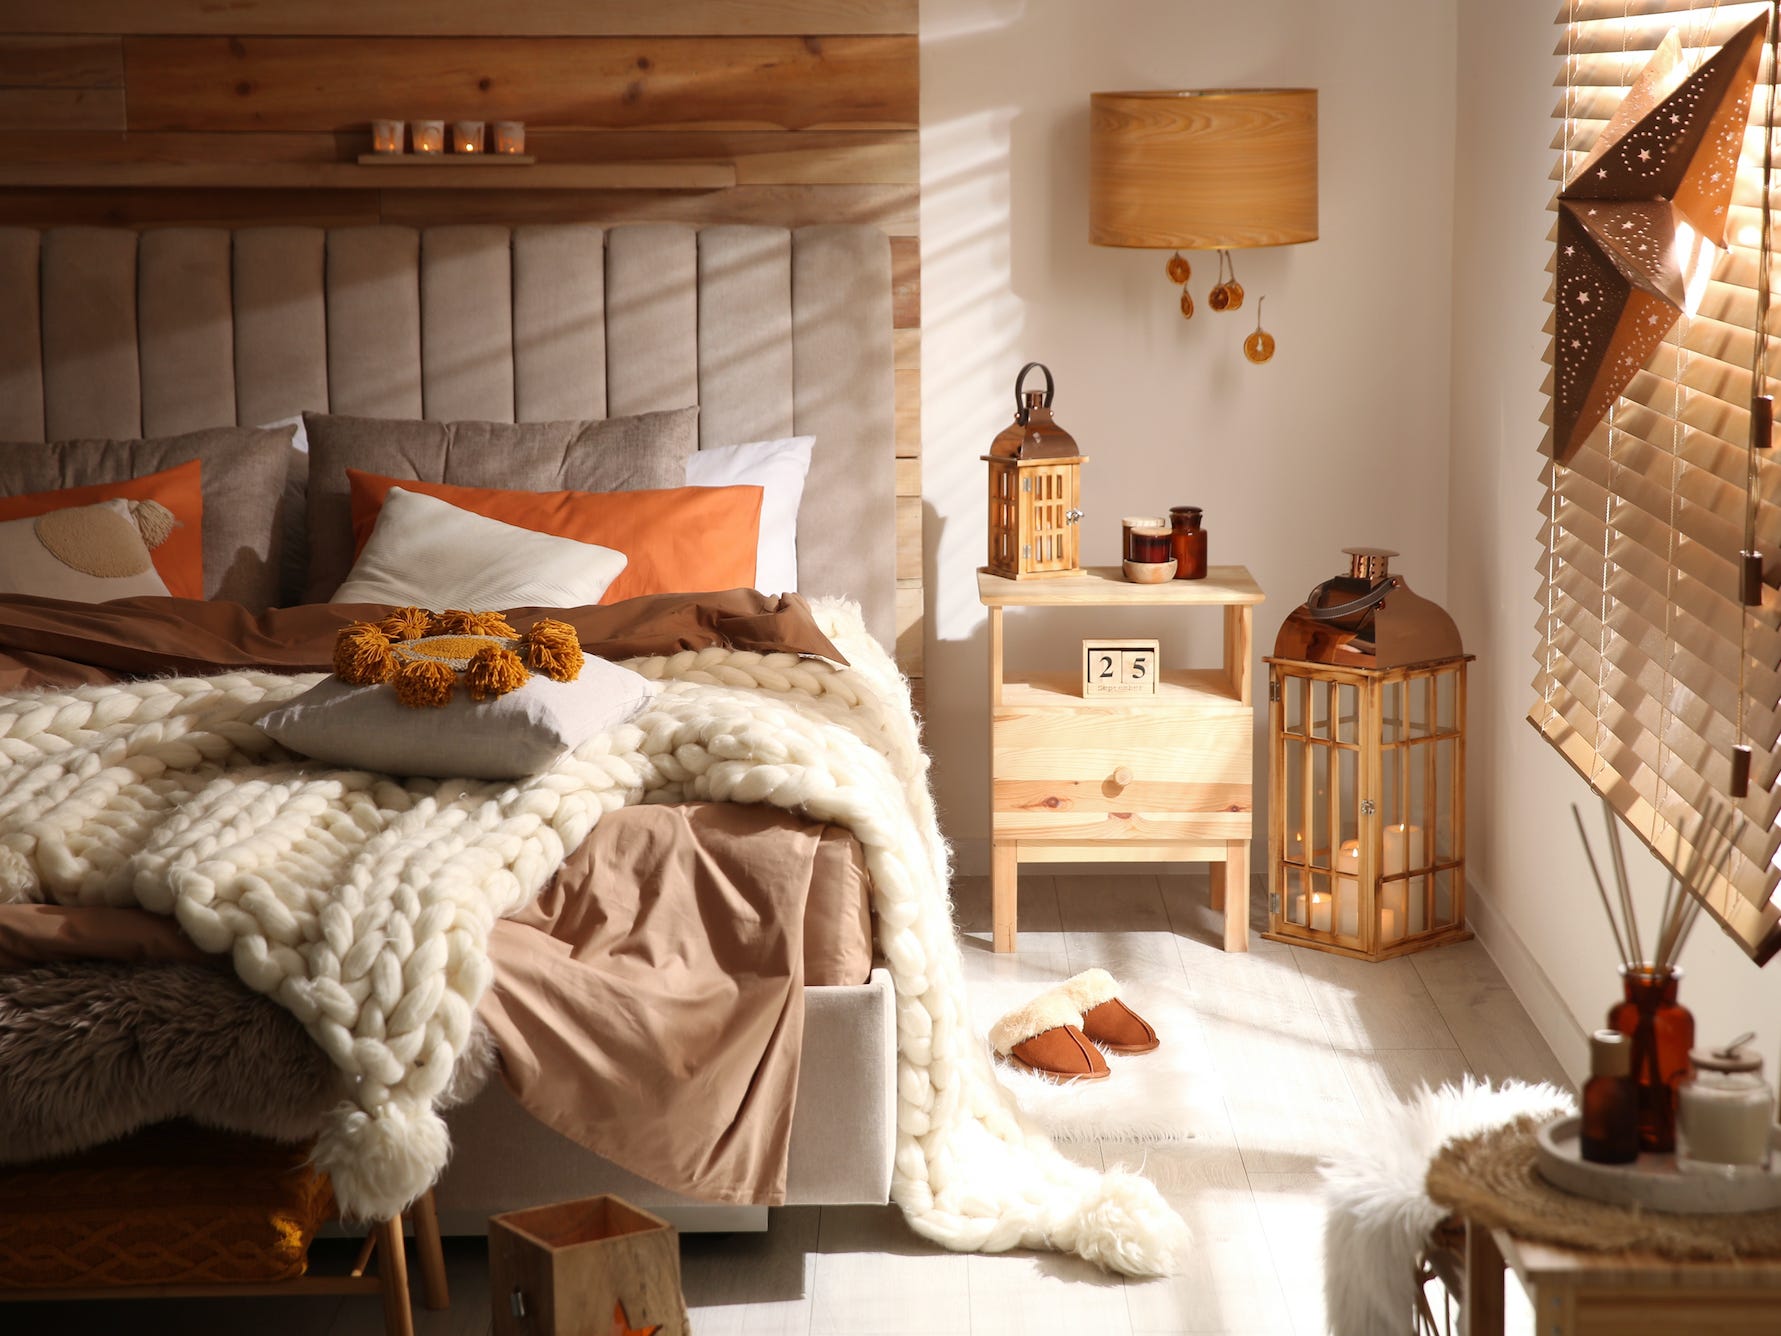 Gemütliches Boho-Schlafzimmer mit hellem Holz und orangefarbenen Dekordetails